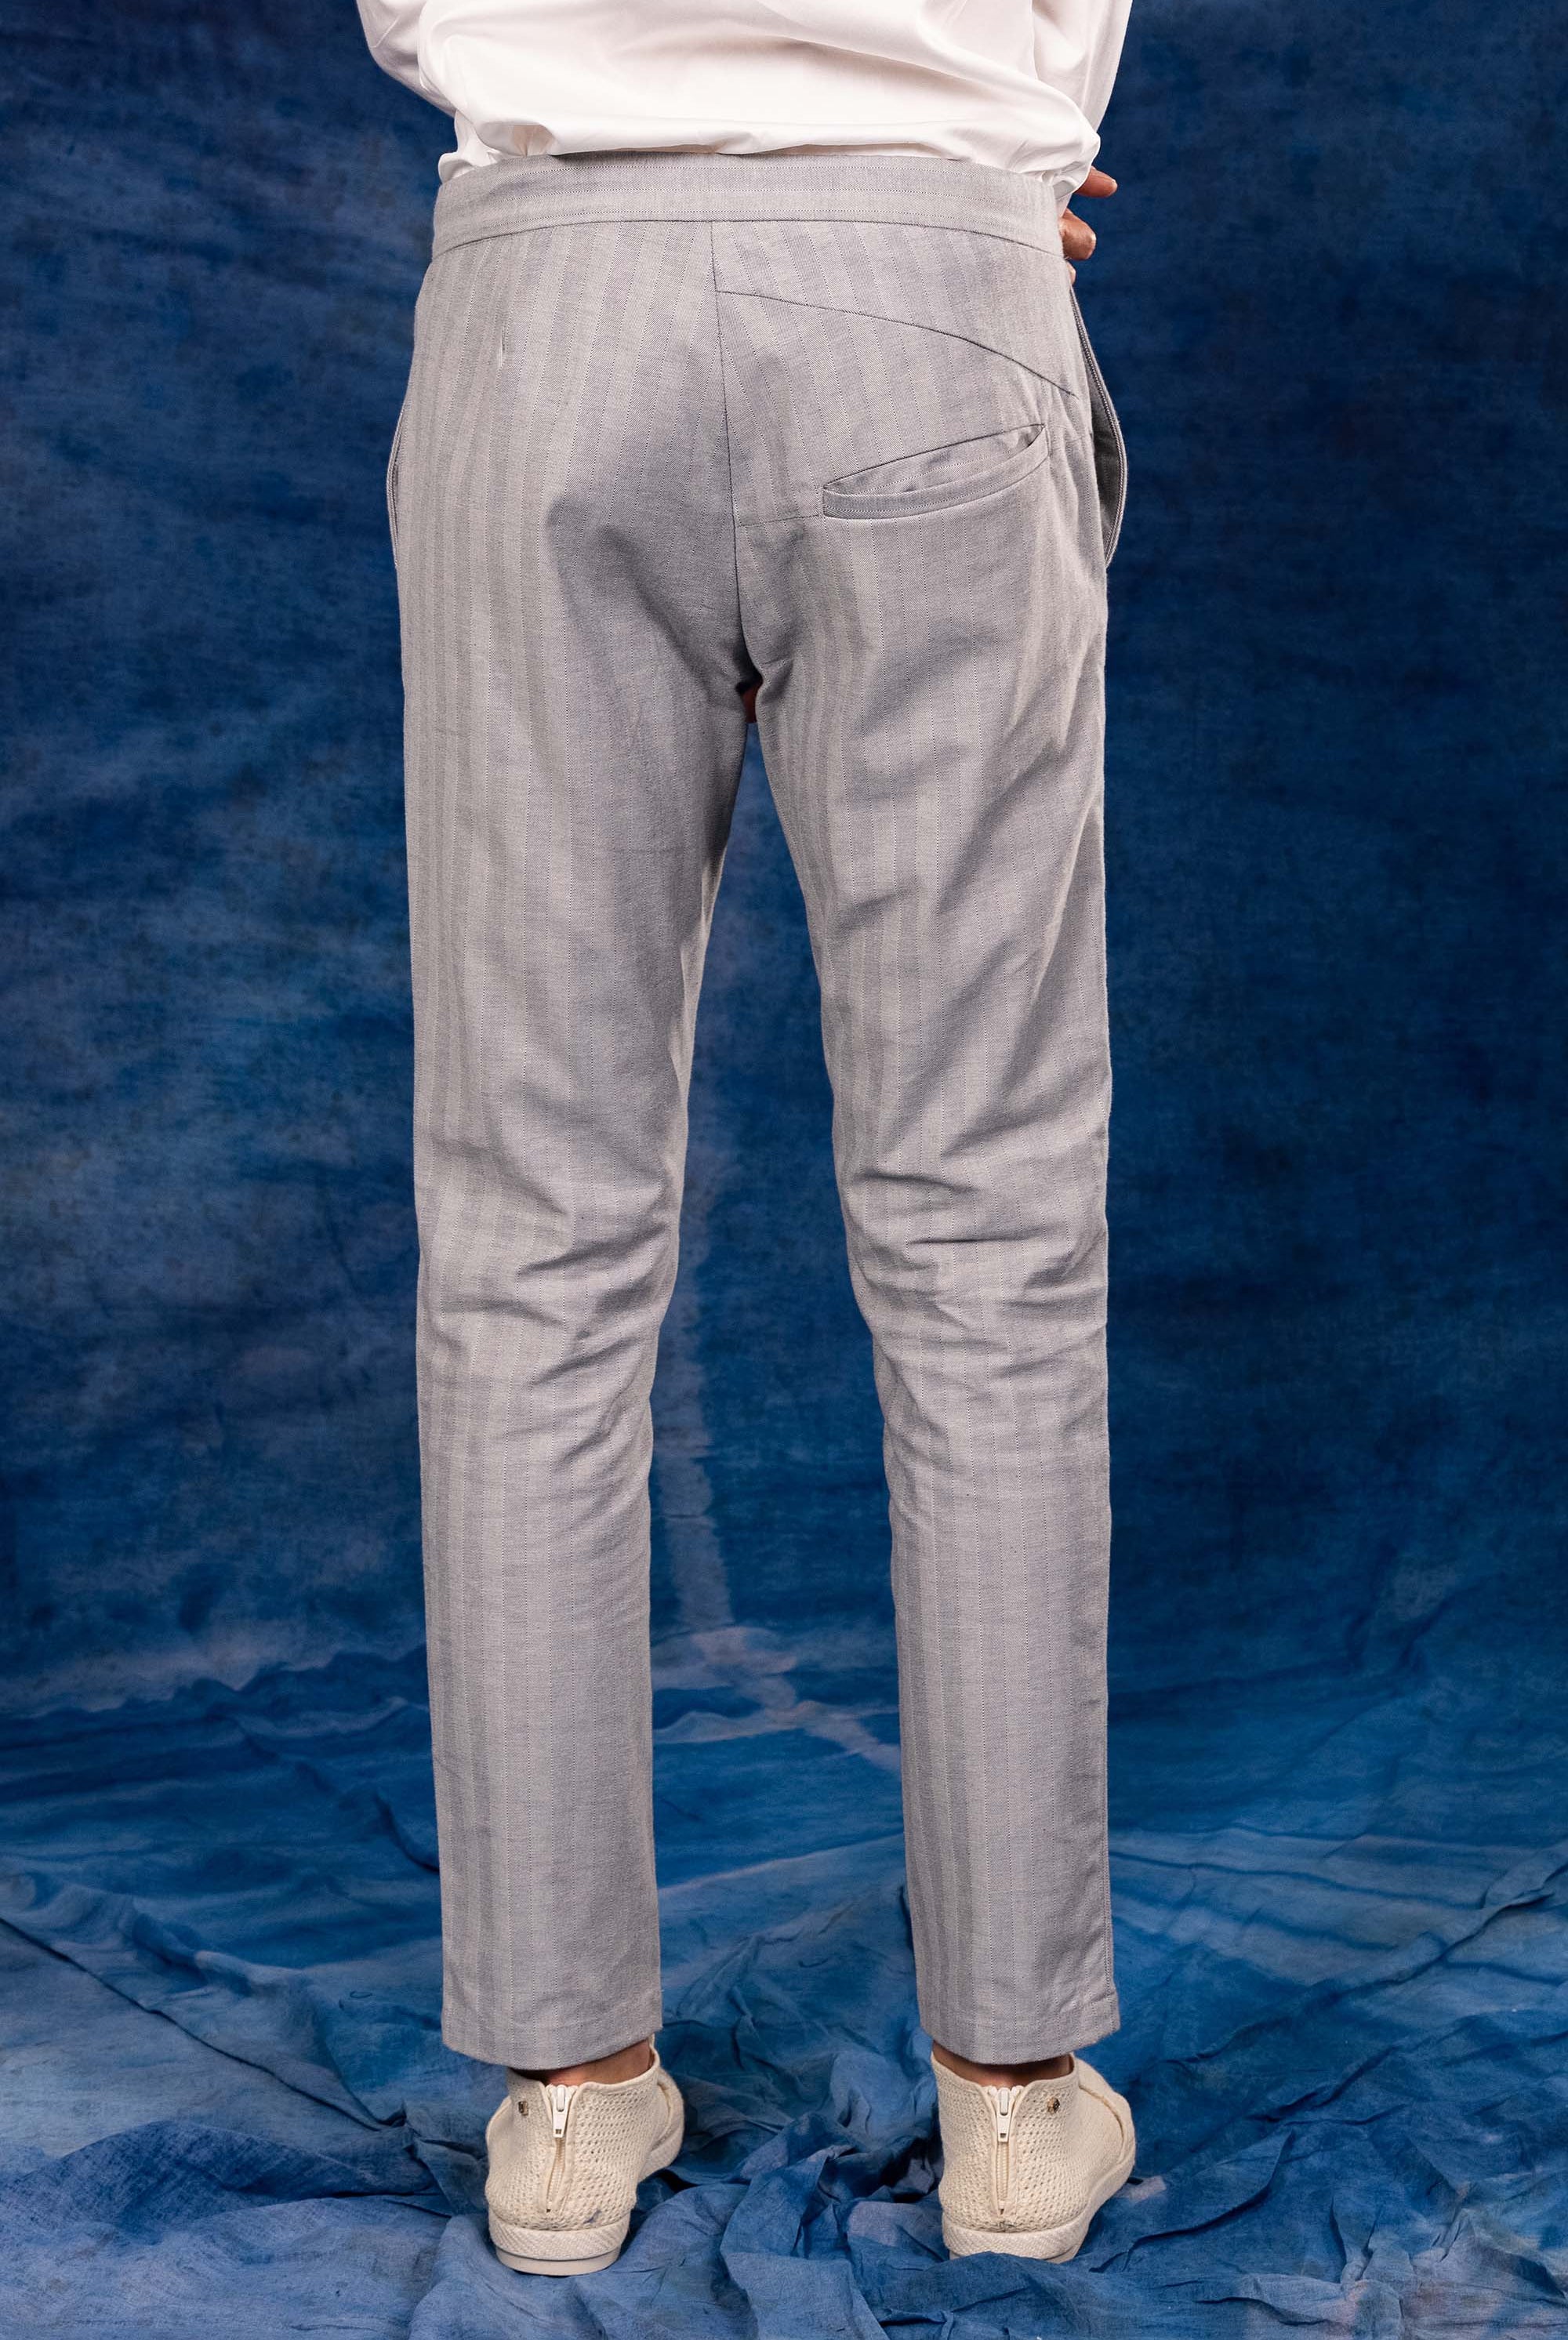 Pantalon Parejo Bleu Clair particulièrement confortables et stylés, parfaits à porter au quotidien